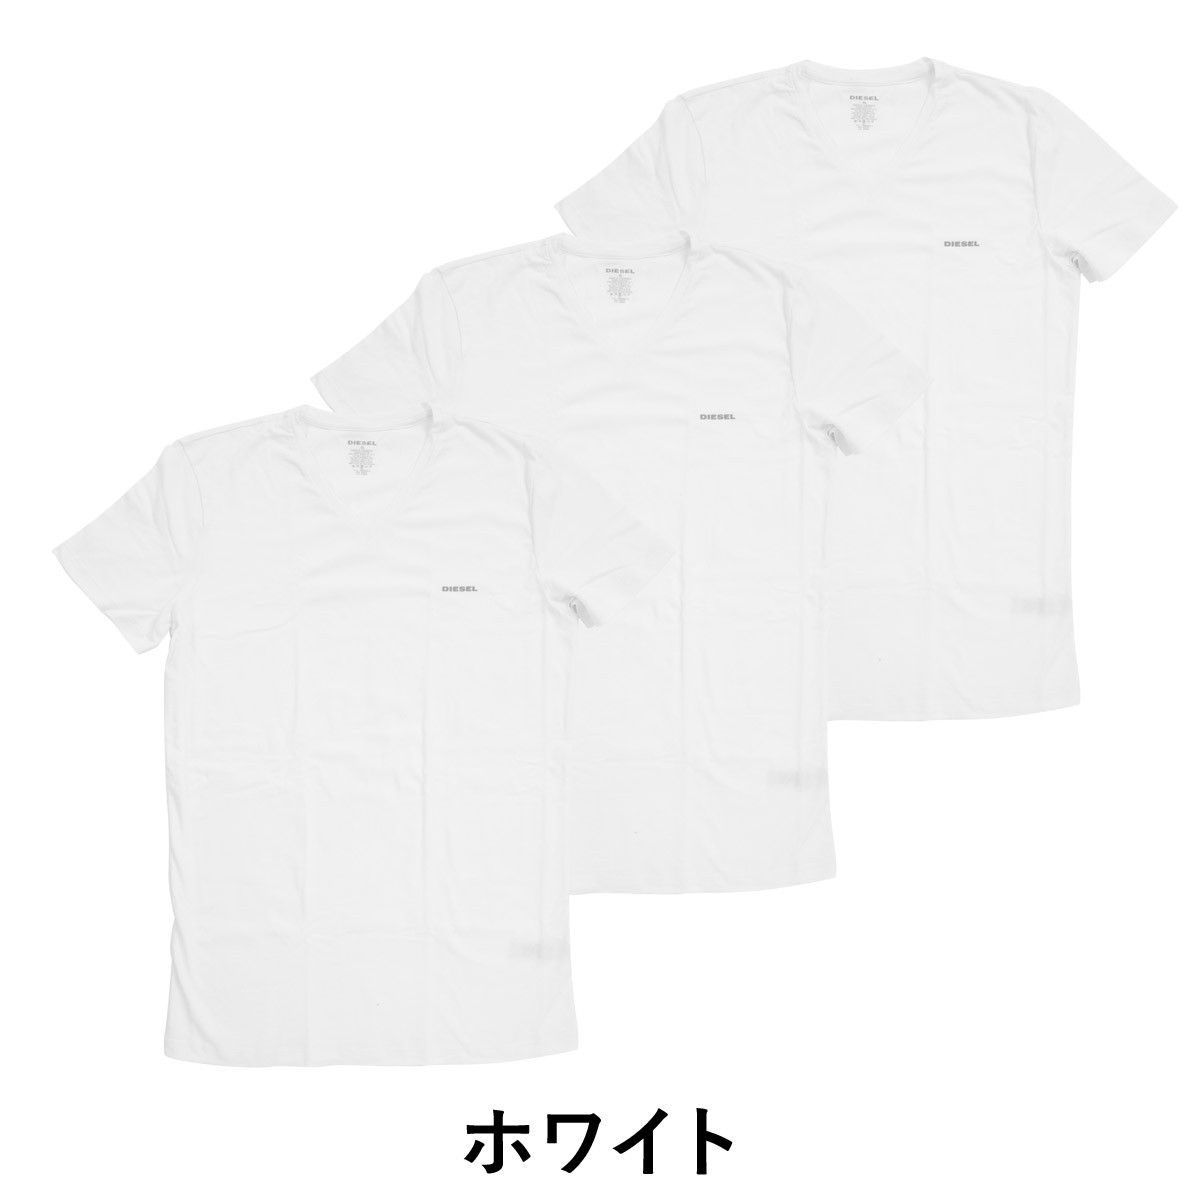 ディーゼル メンズ Tシャツ 3枚セット ブランド 無地 父の日 DIESEL 半袖